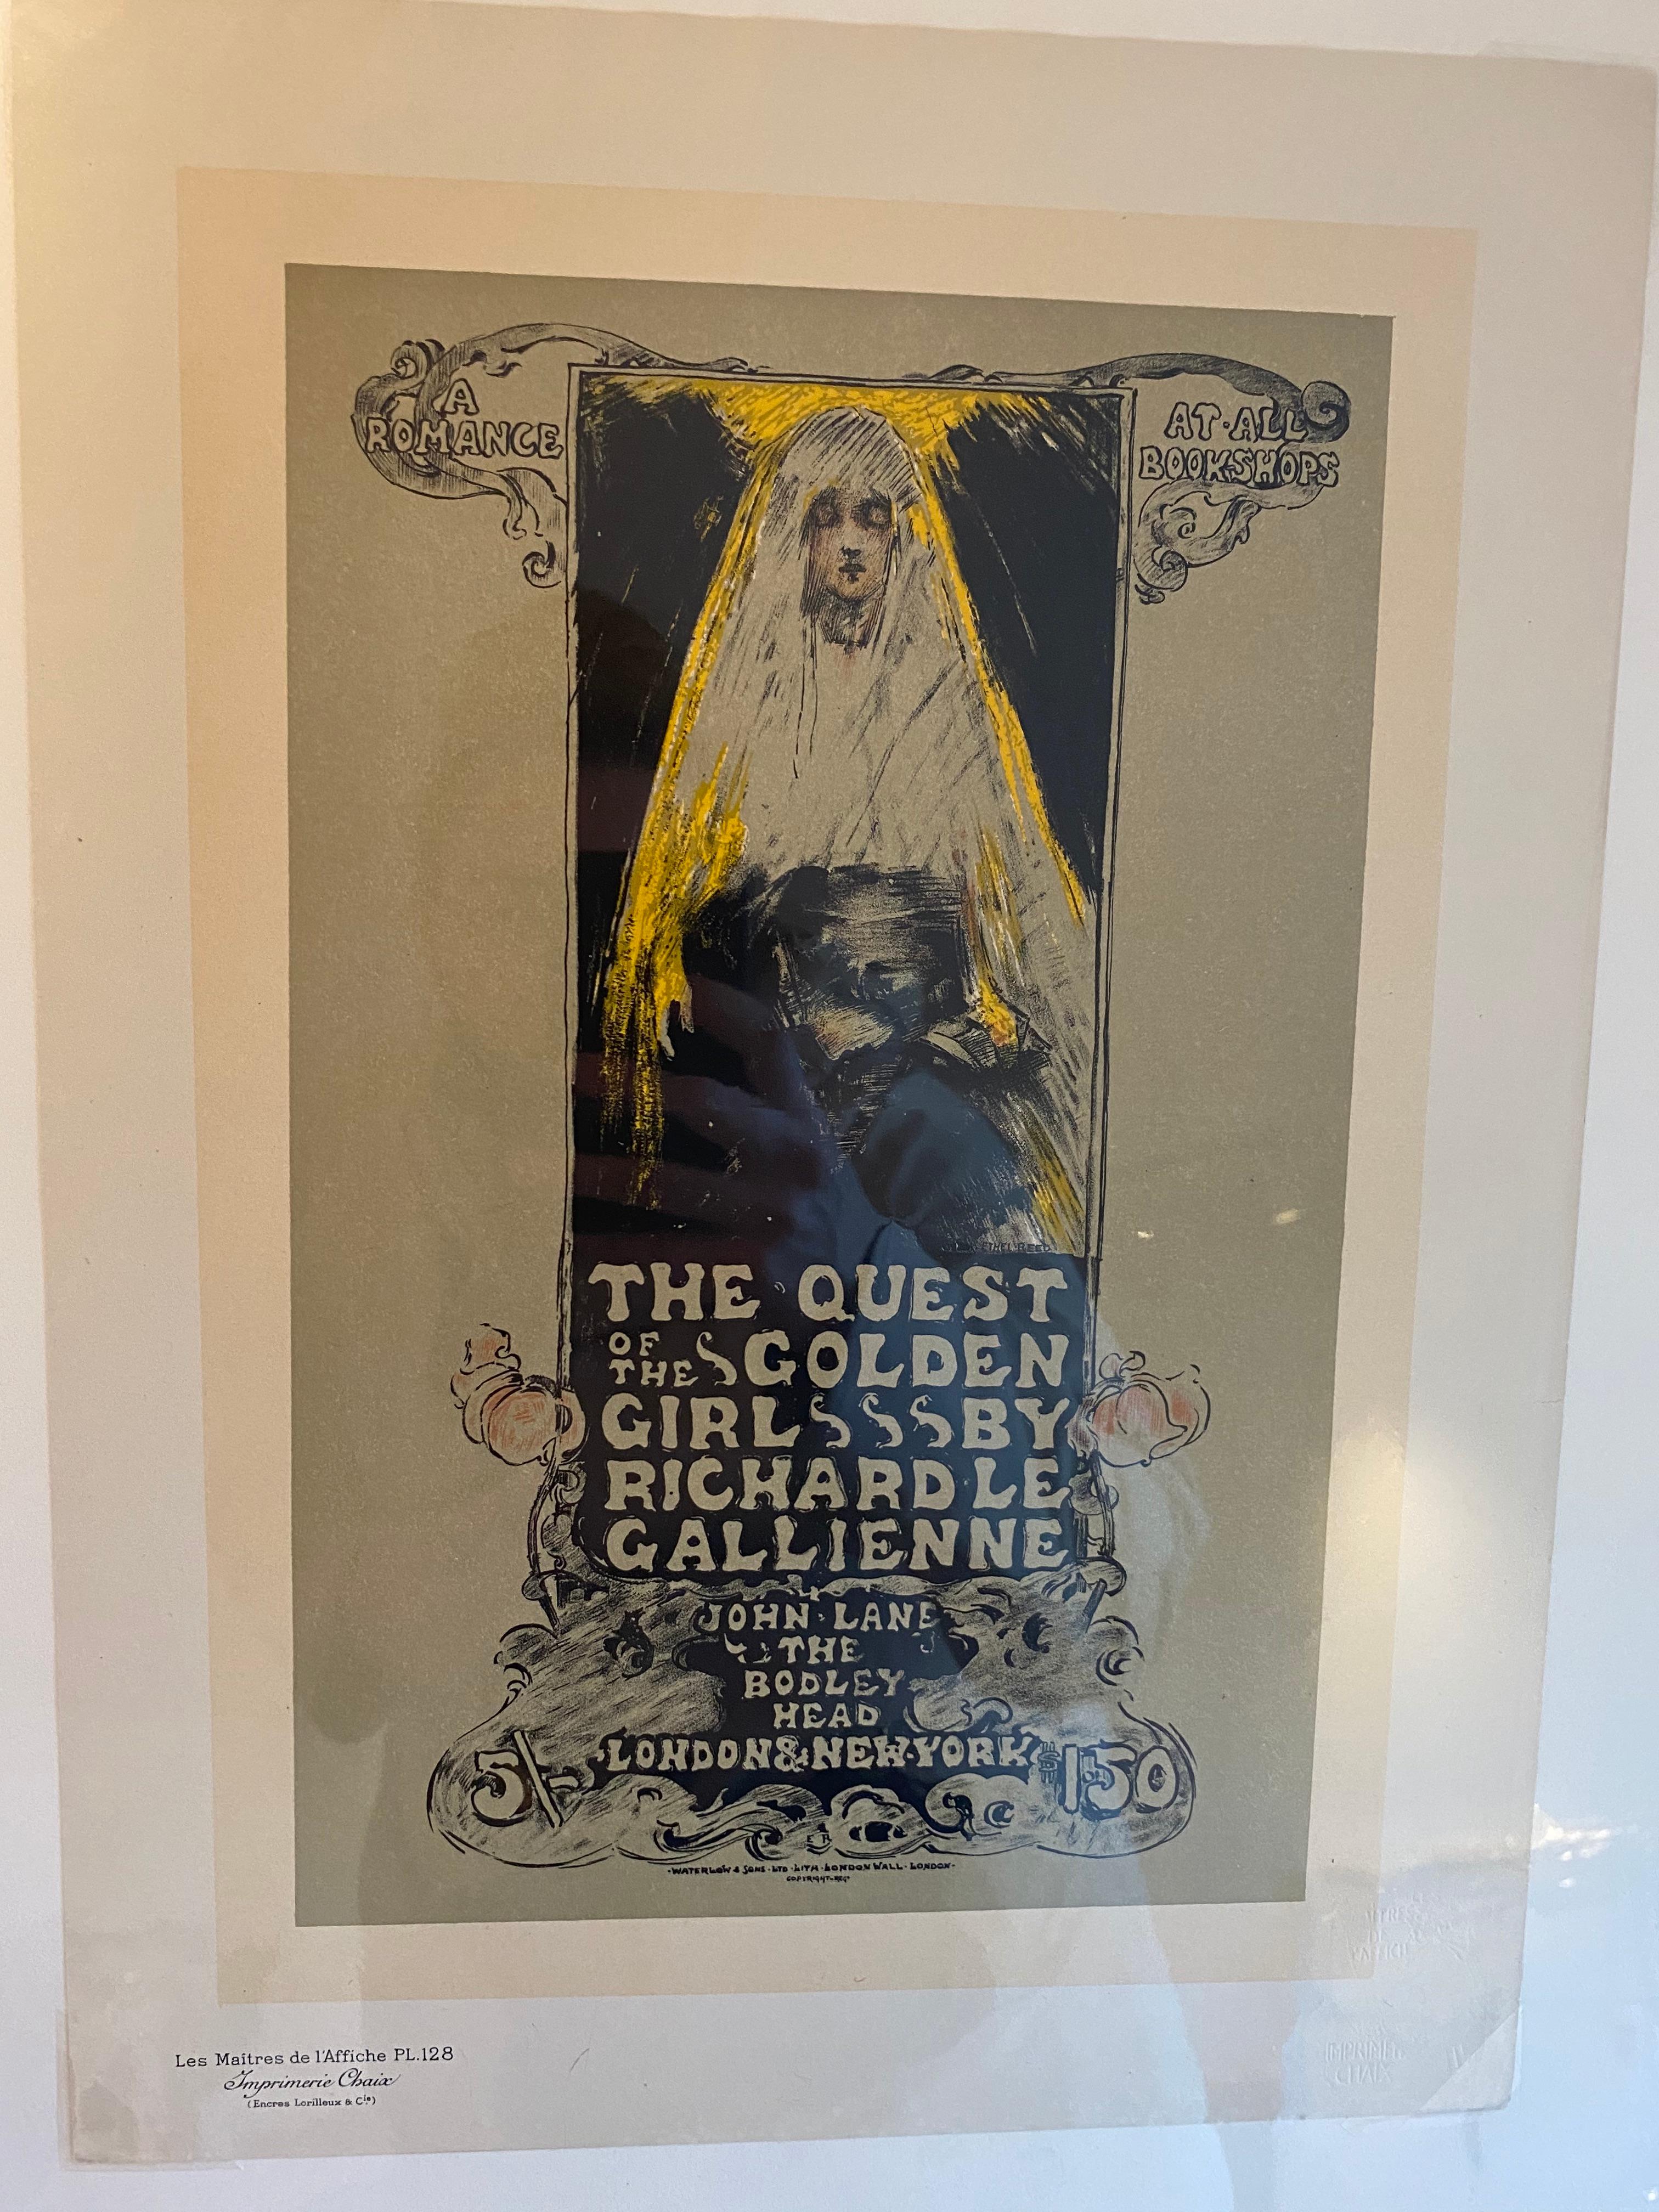 « La quête de la jeune fille dorée » de Les Maitres de l'Affiche - Print de Ethel Reed